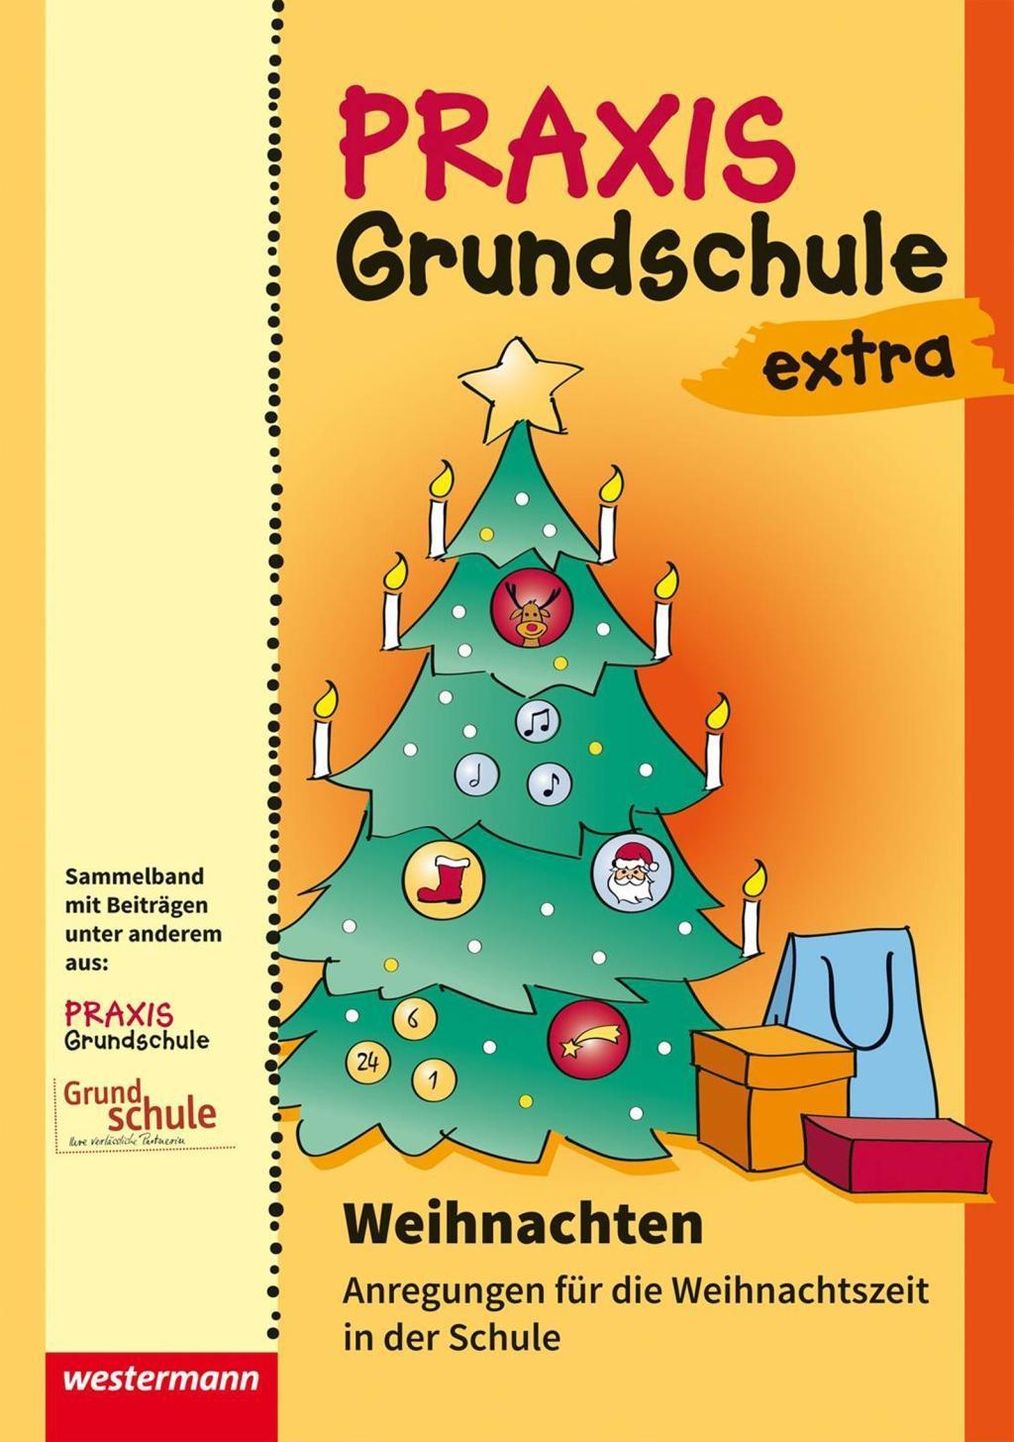 Weihnachten: Anregungen für die Weihnachtszeit in der Schule Buch  versandkostenfrei bei Weltbild.at bestellen